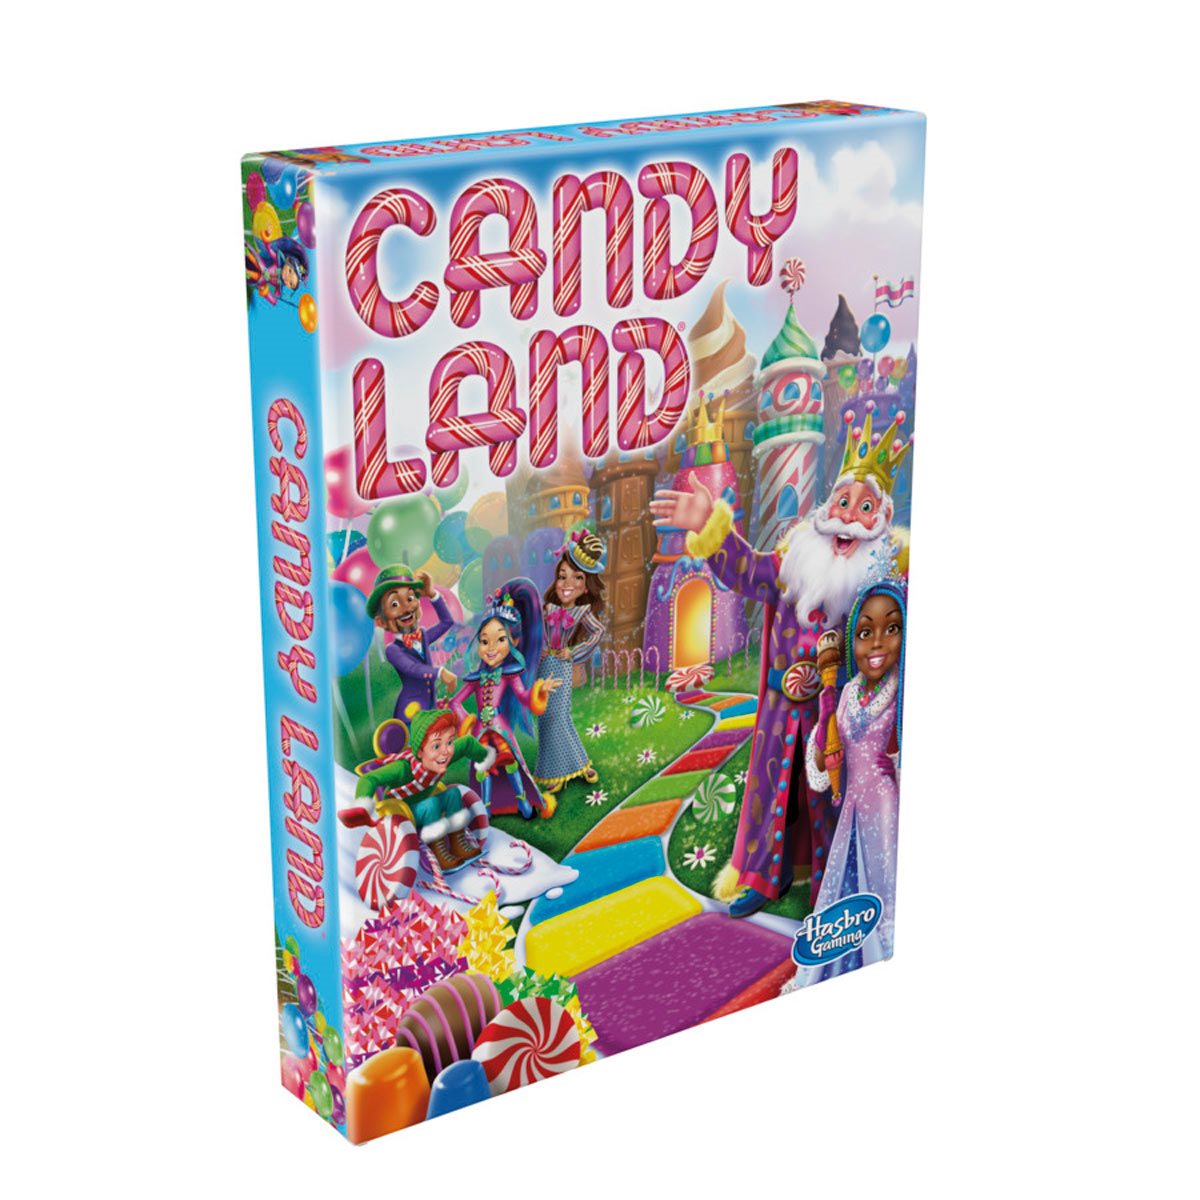 Jogo Candy Land - A4813 - Hasbro - Real Brinquedos